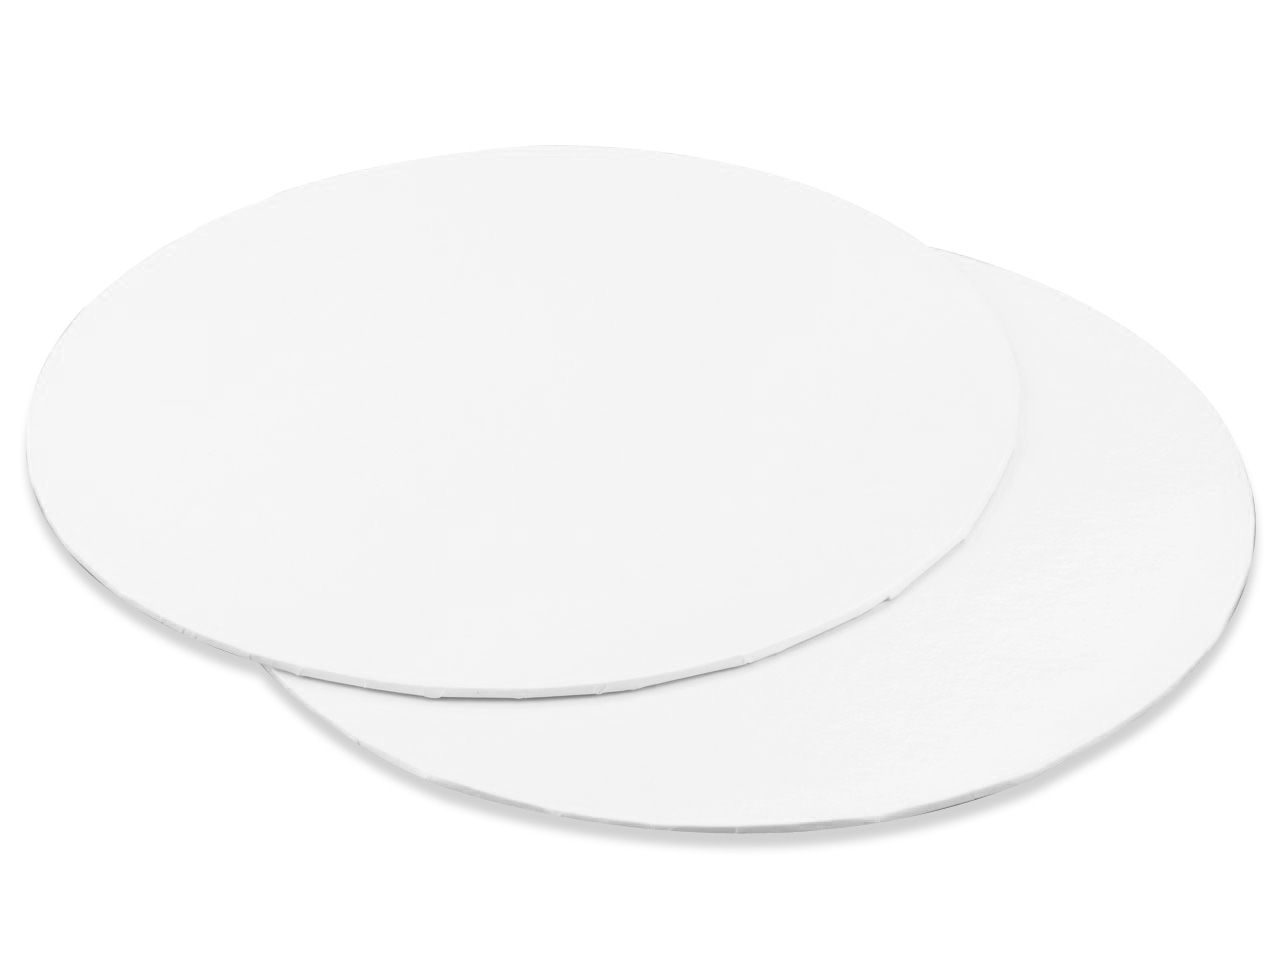 Cakecard: rund in Weiß, 3 Stück á 35 cm, 3 mm